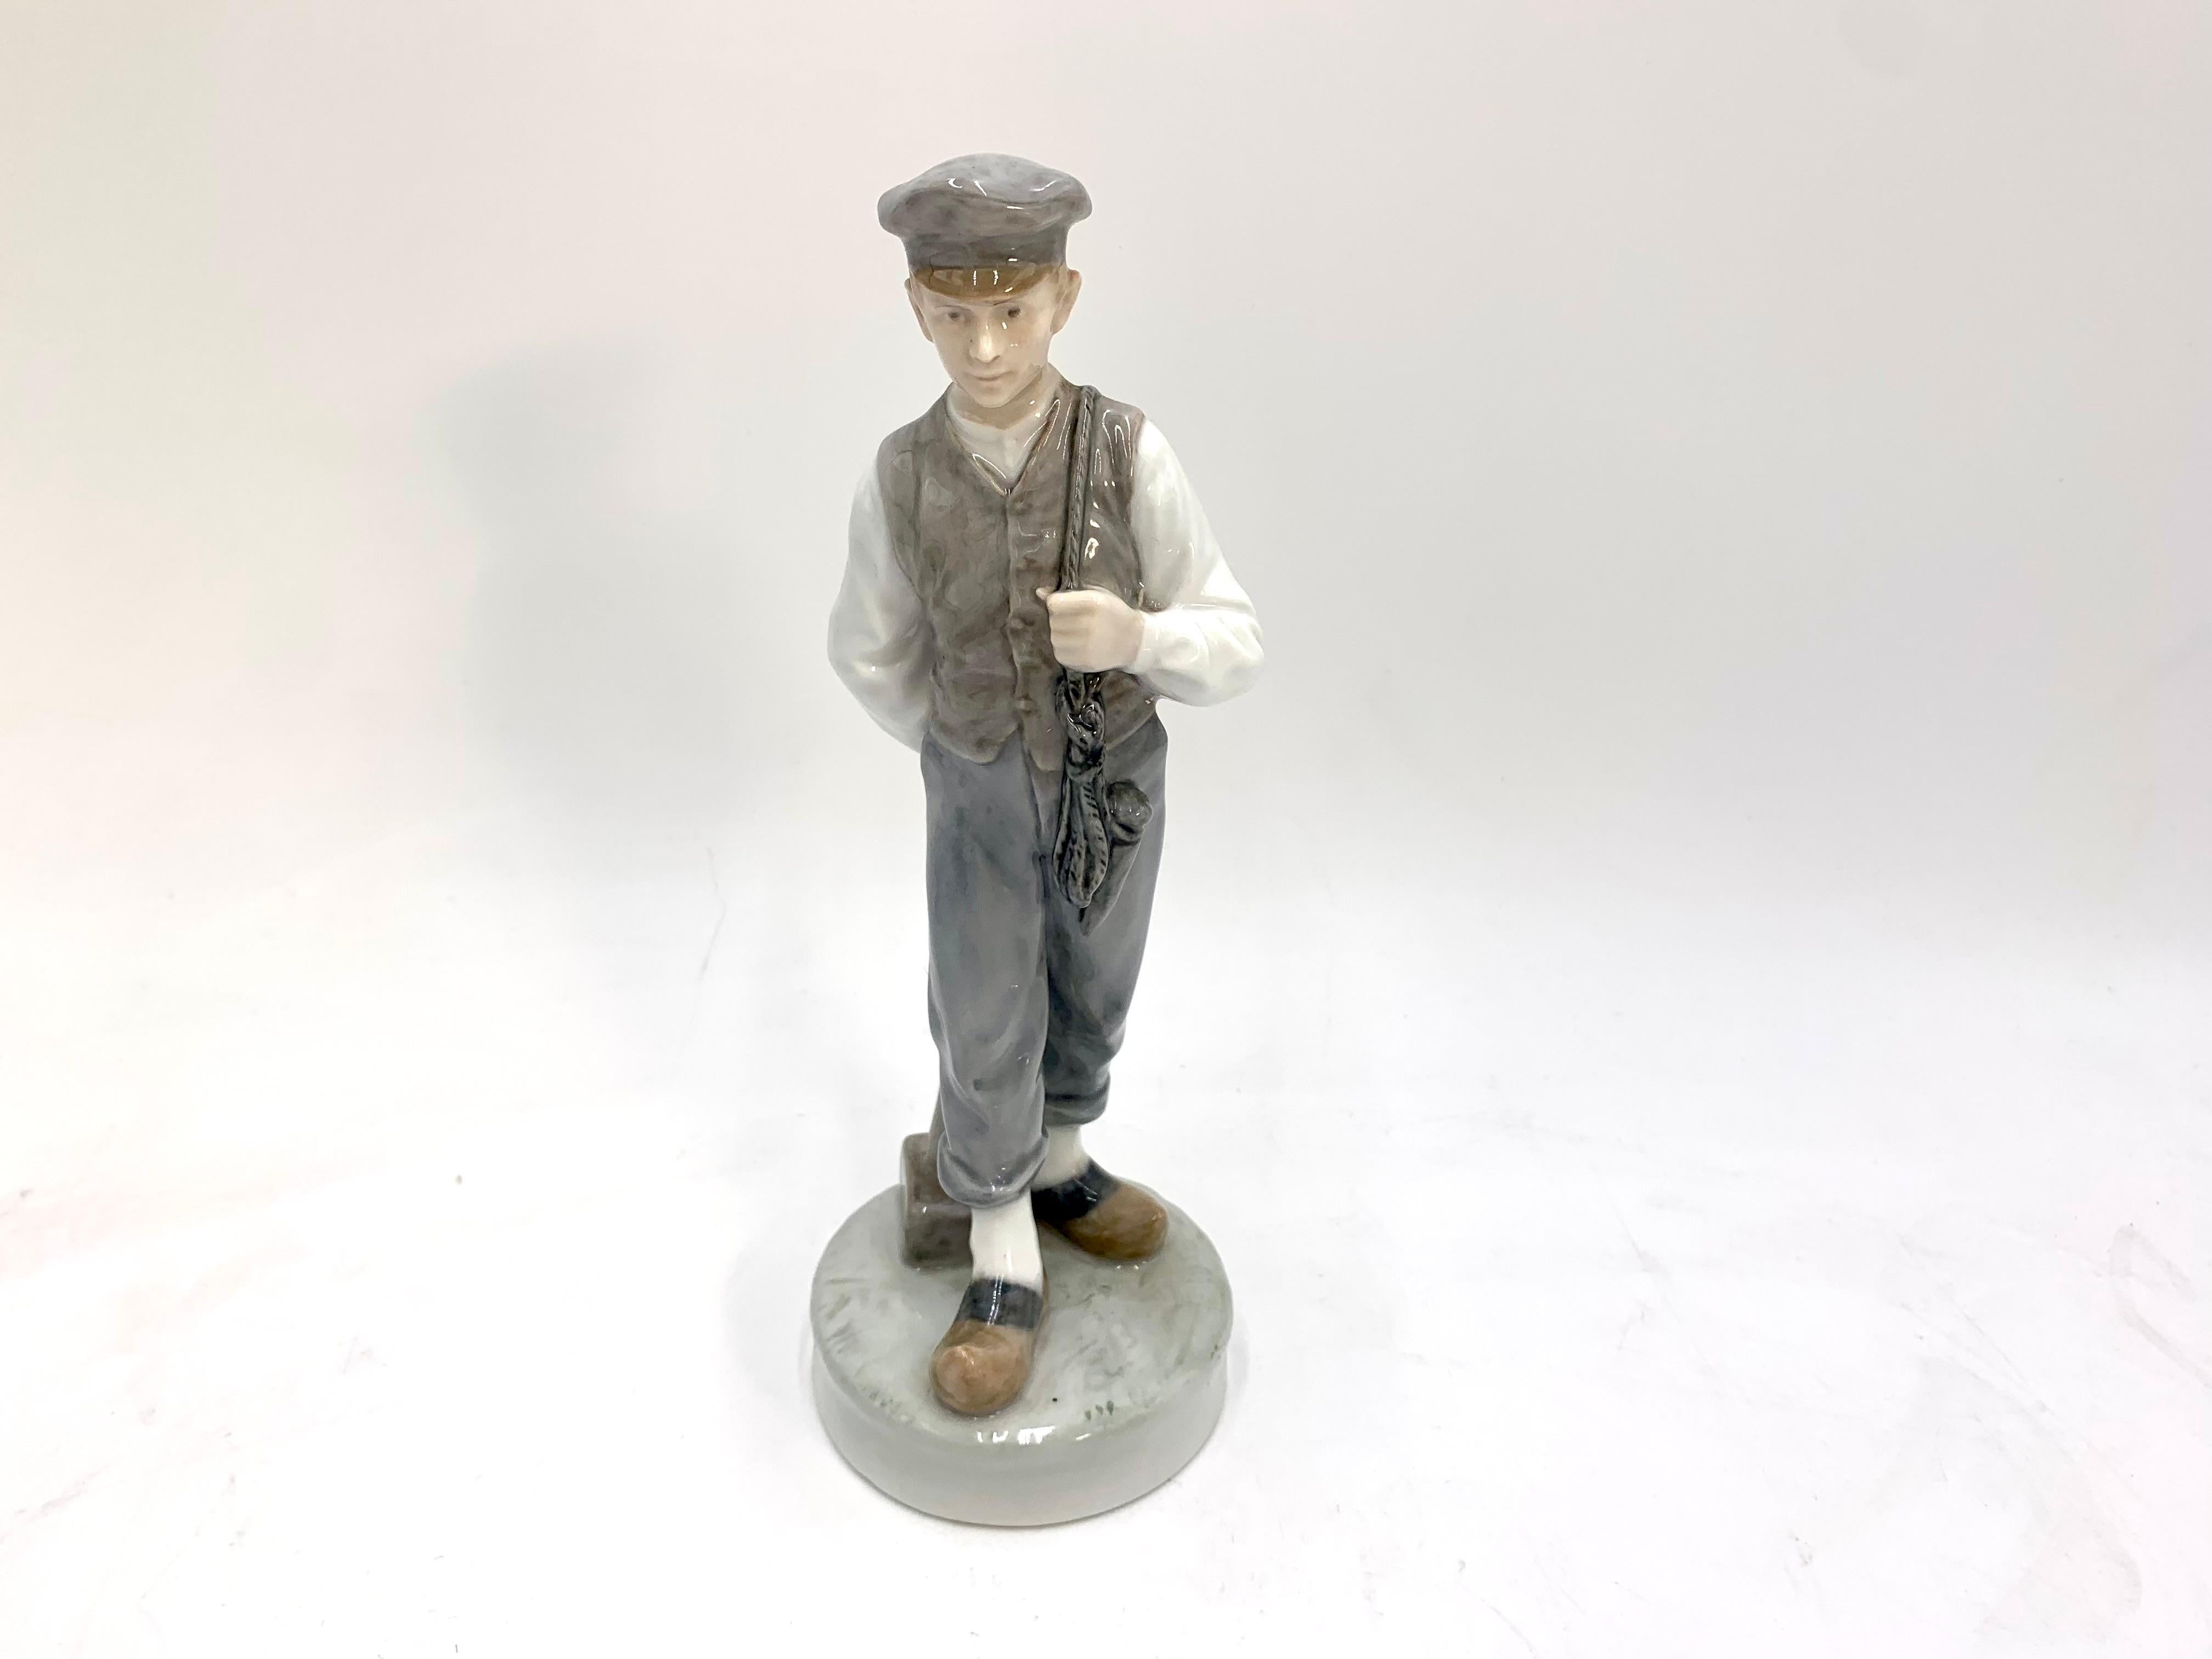 Porzellanfigur eines Jungen (Hirte) mit einem Hammer

Hergestellt in Dänemark von der Manufaktur Royal Copenhagen

Hergestellt im Jahr 1945.

Modellnummer # 620

Sehr guter Zustand, keine Schäden.

Maße: Höhe 22,5 Breite 7cm Tiefe 8cm.